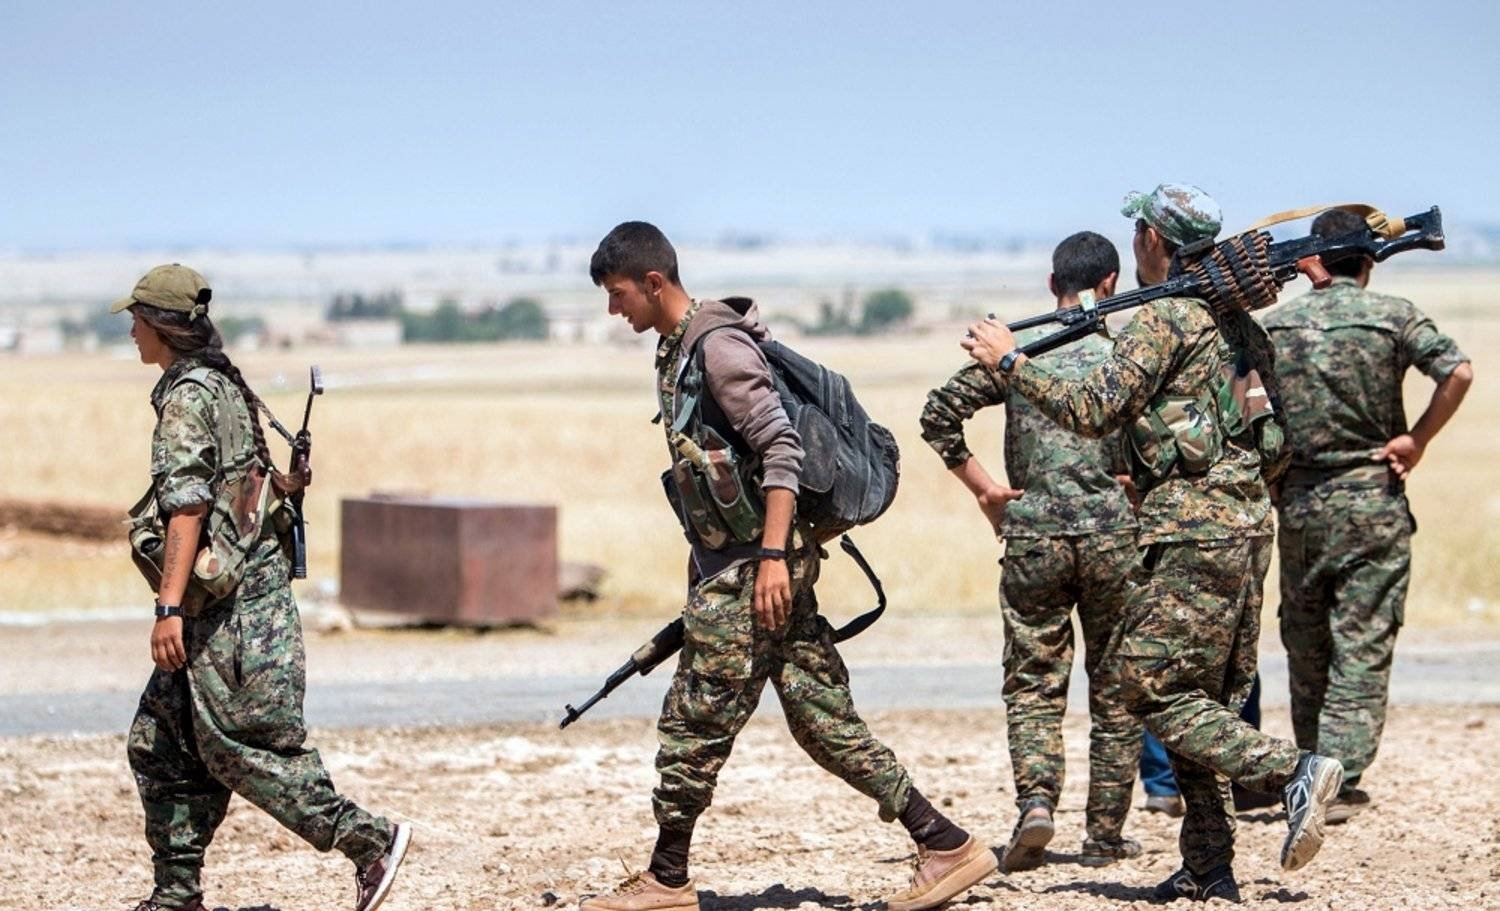 «هيومن رايتس» تحمّل تركيا المسؤولية عن «انتهاكات جسيمة» في شمال سوريا